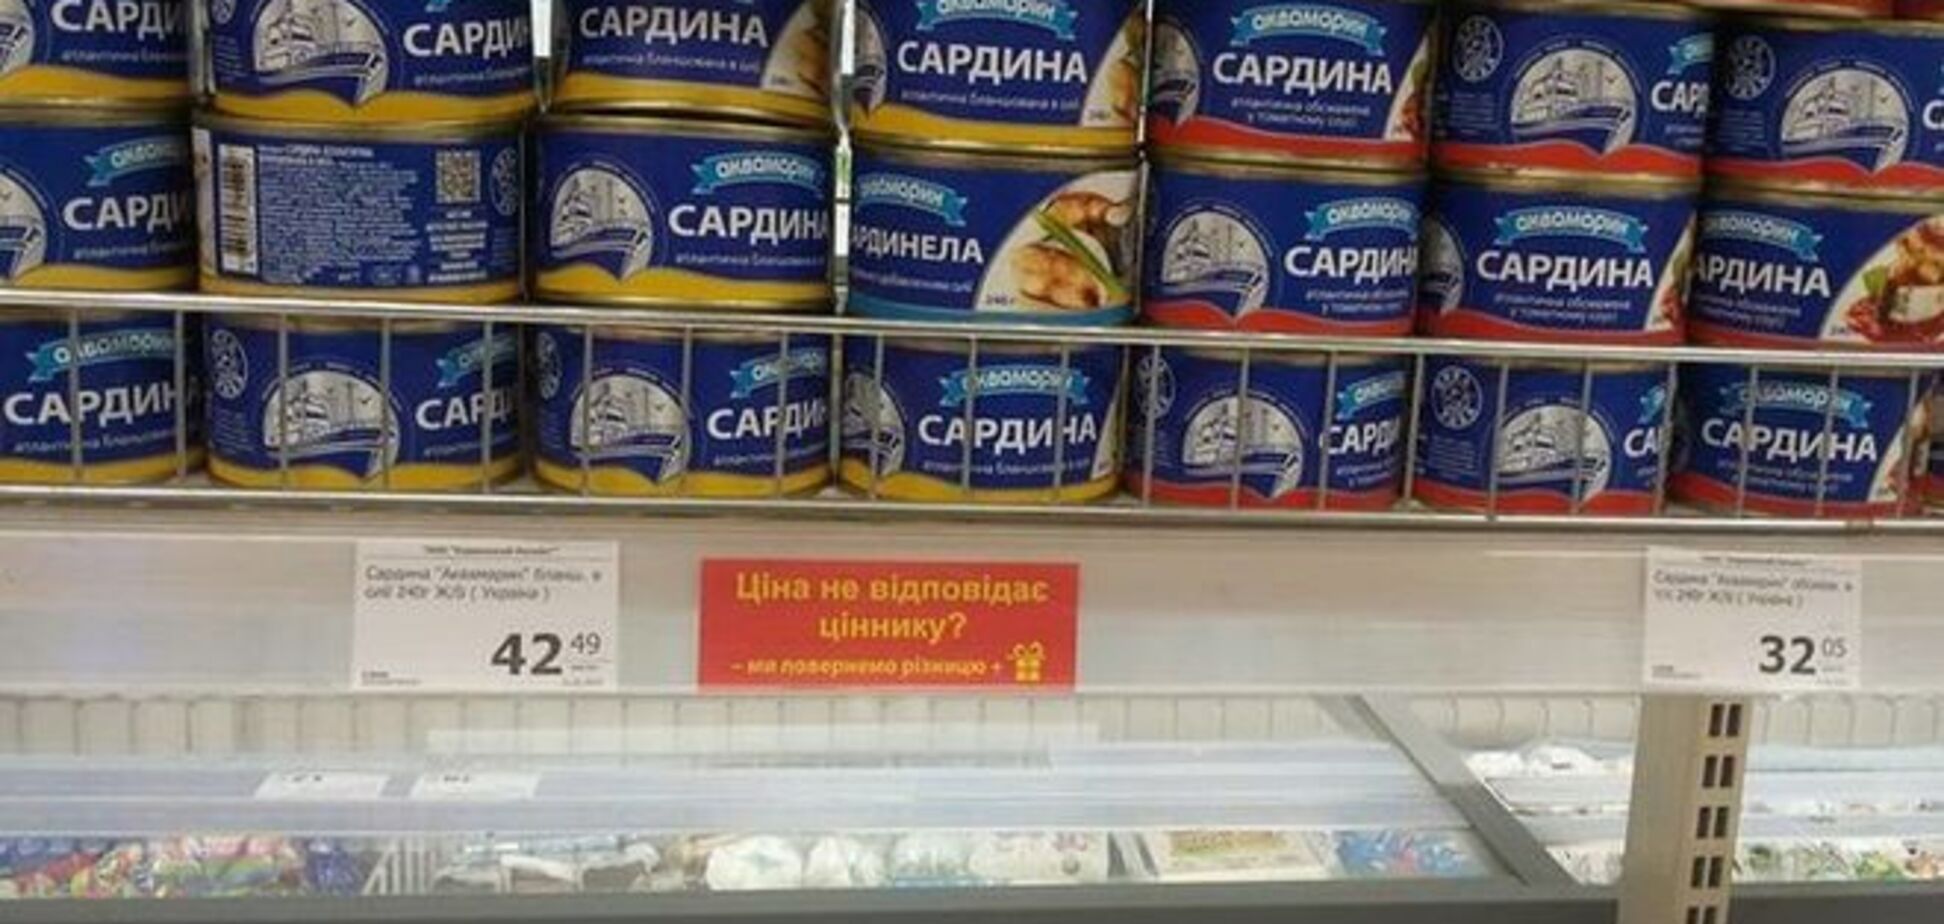 Красиво жить не запретишь: цены в продуктовых магазинах Донецка выше столичных - фотофакт